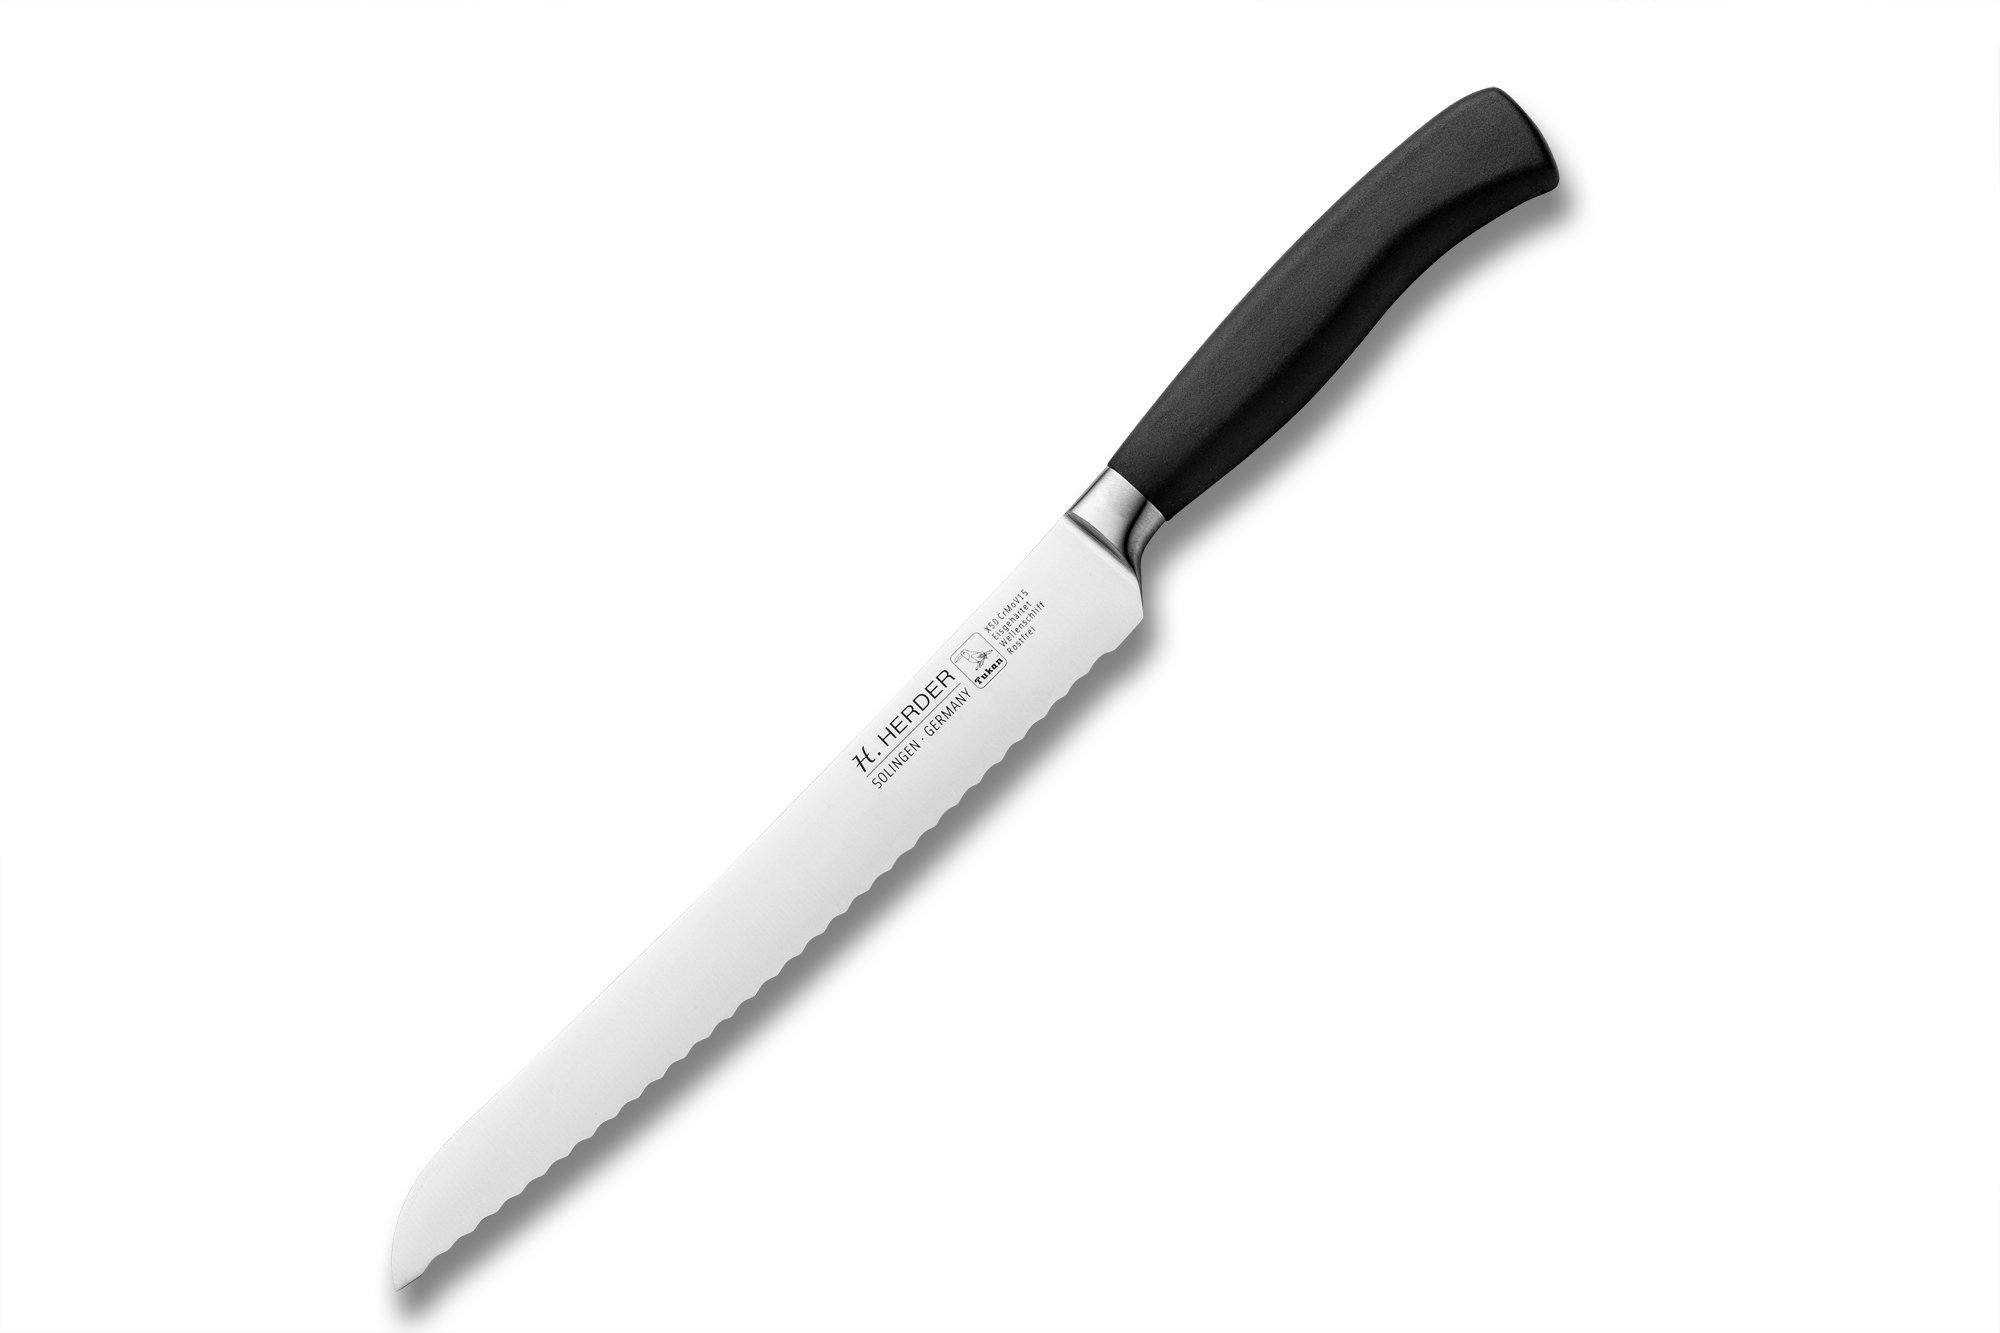 H. Herder Brotmesser 22cm Eterno-geschmiedet Kunststoff Griff mit aus